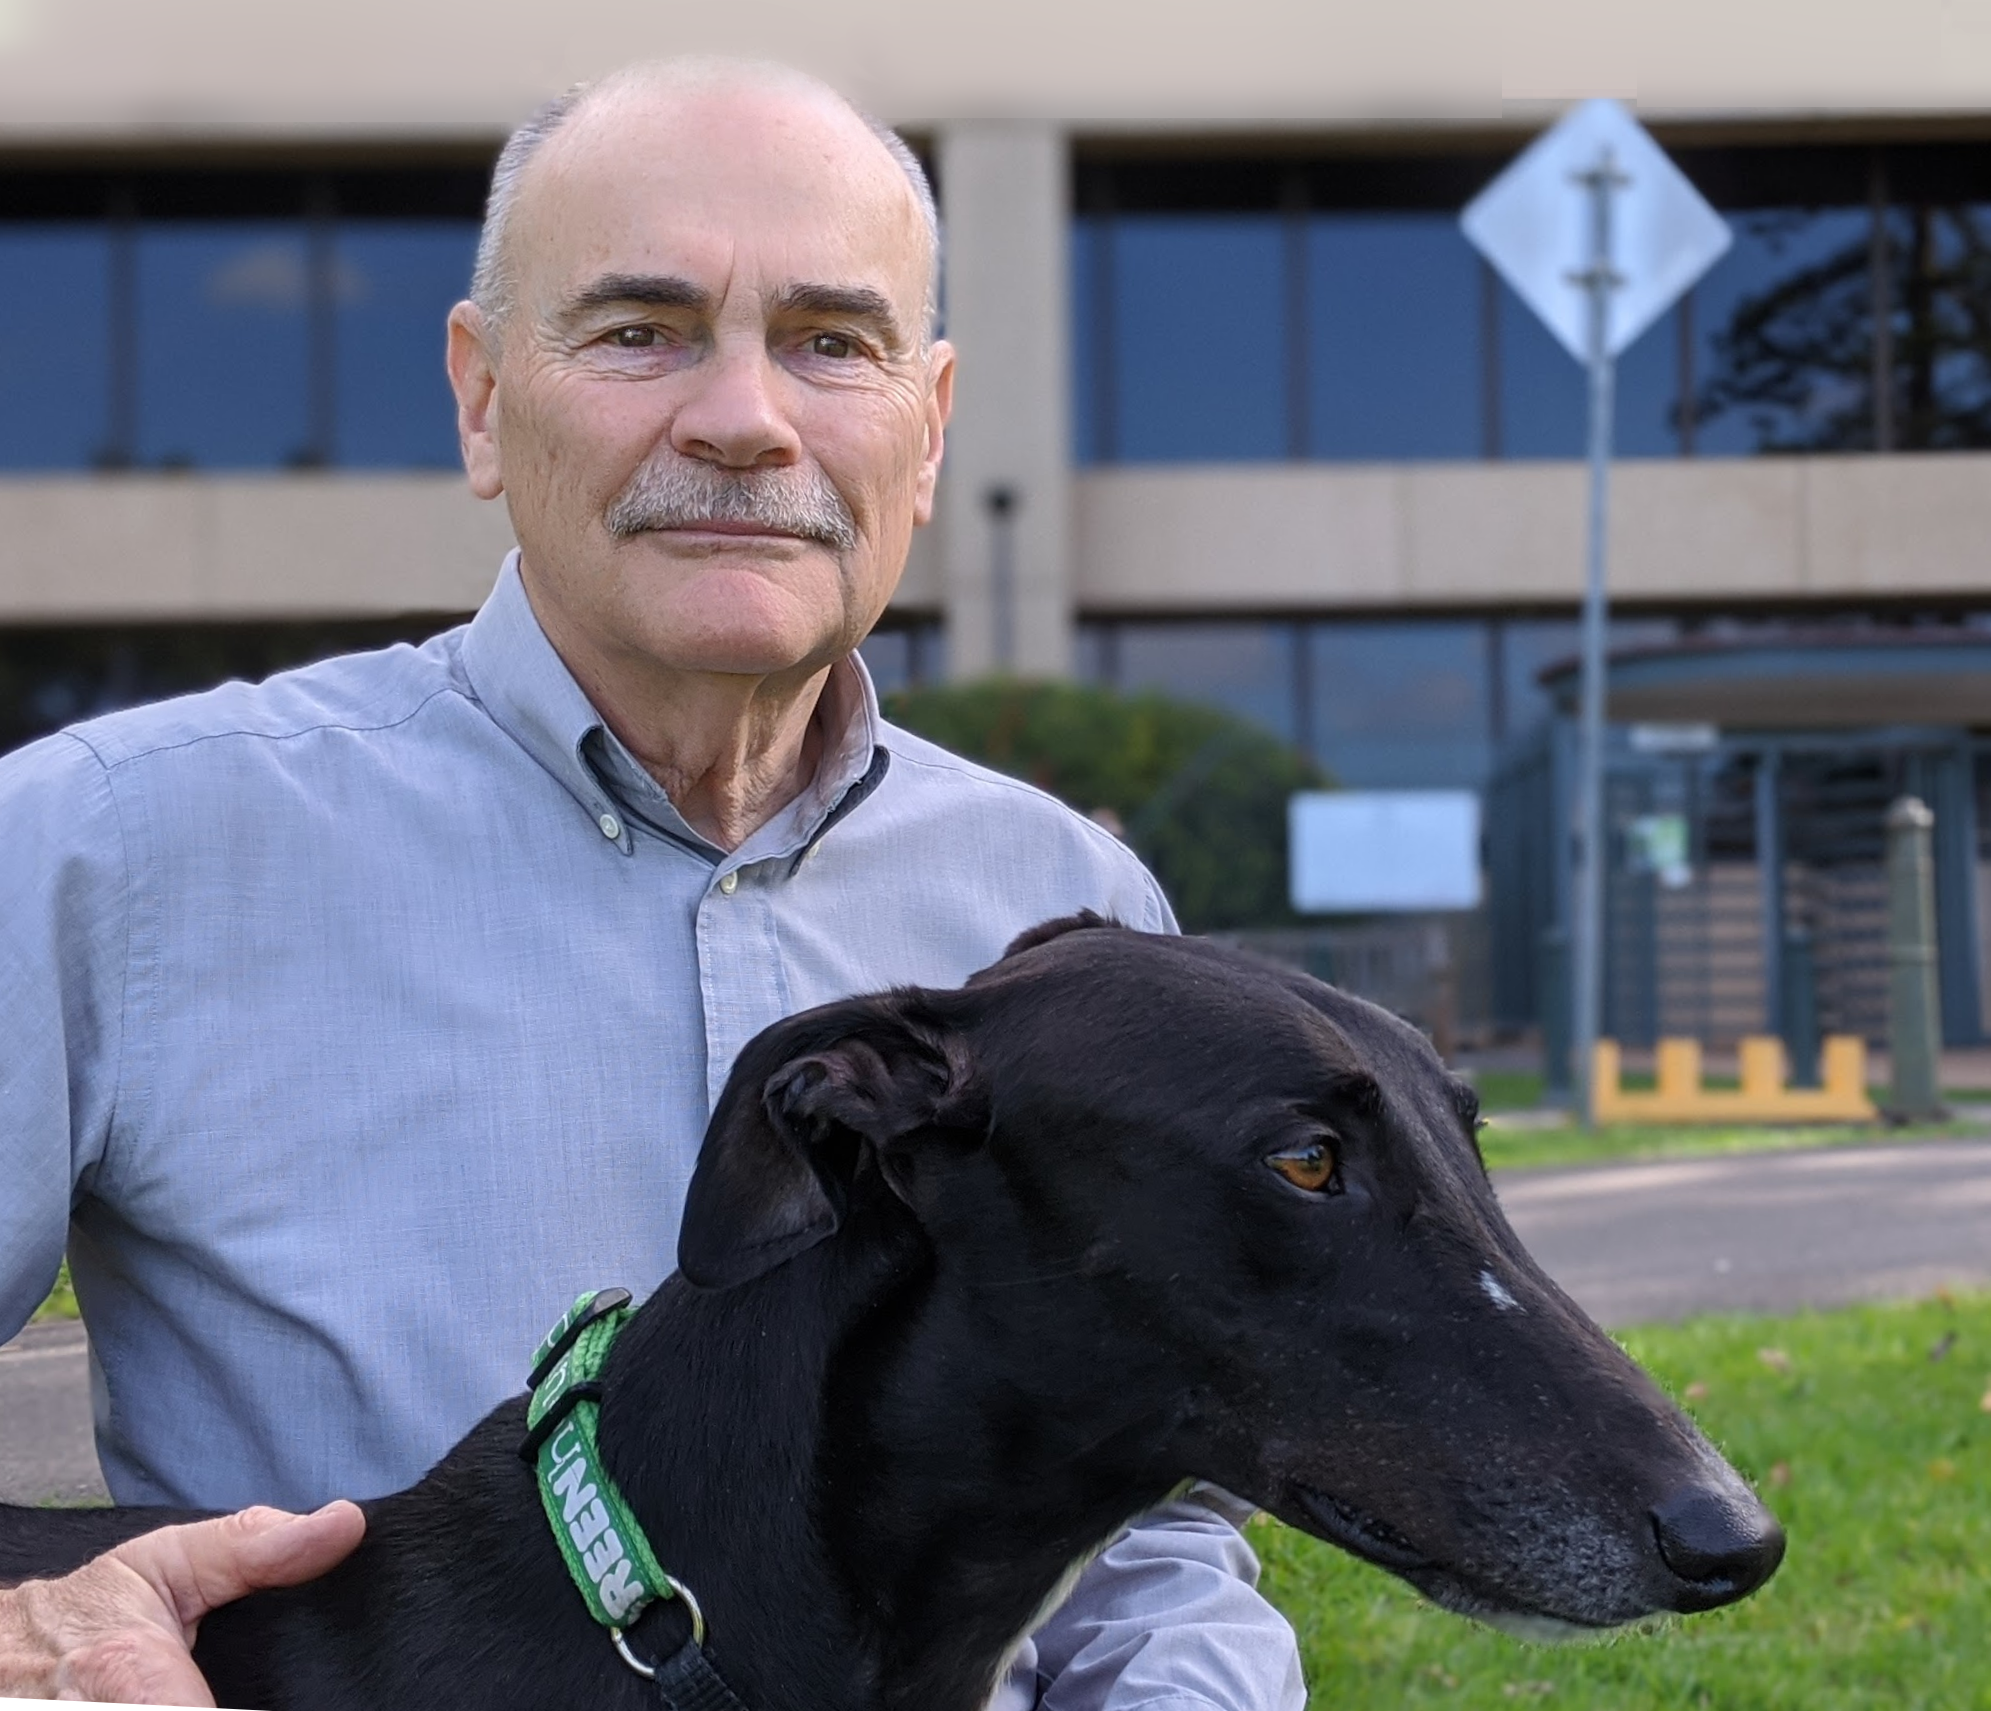 Greyhound racing activists call to close Goulburn's oval track